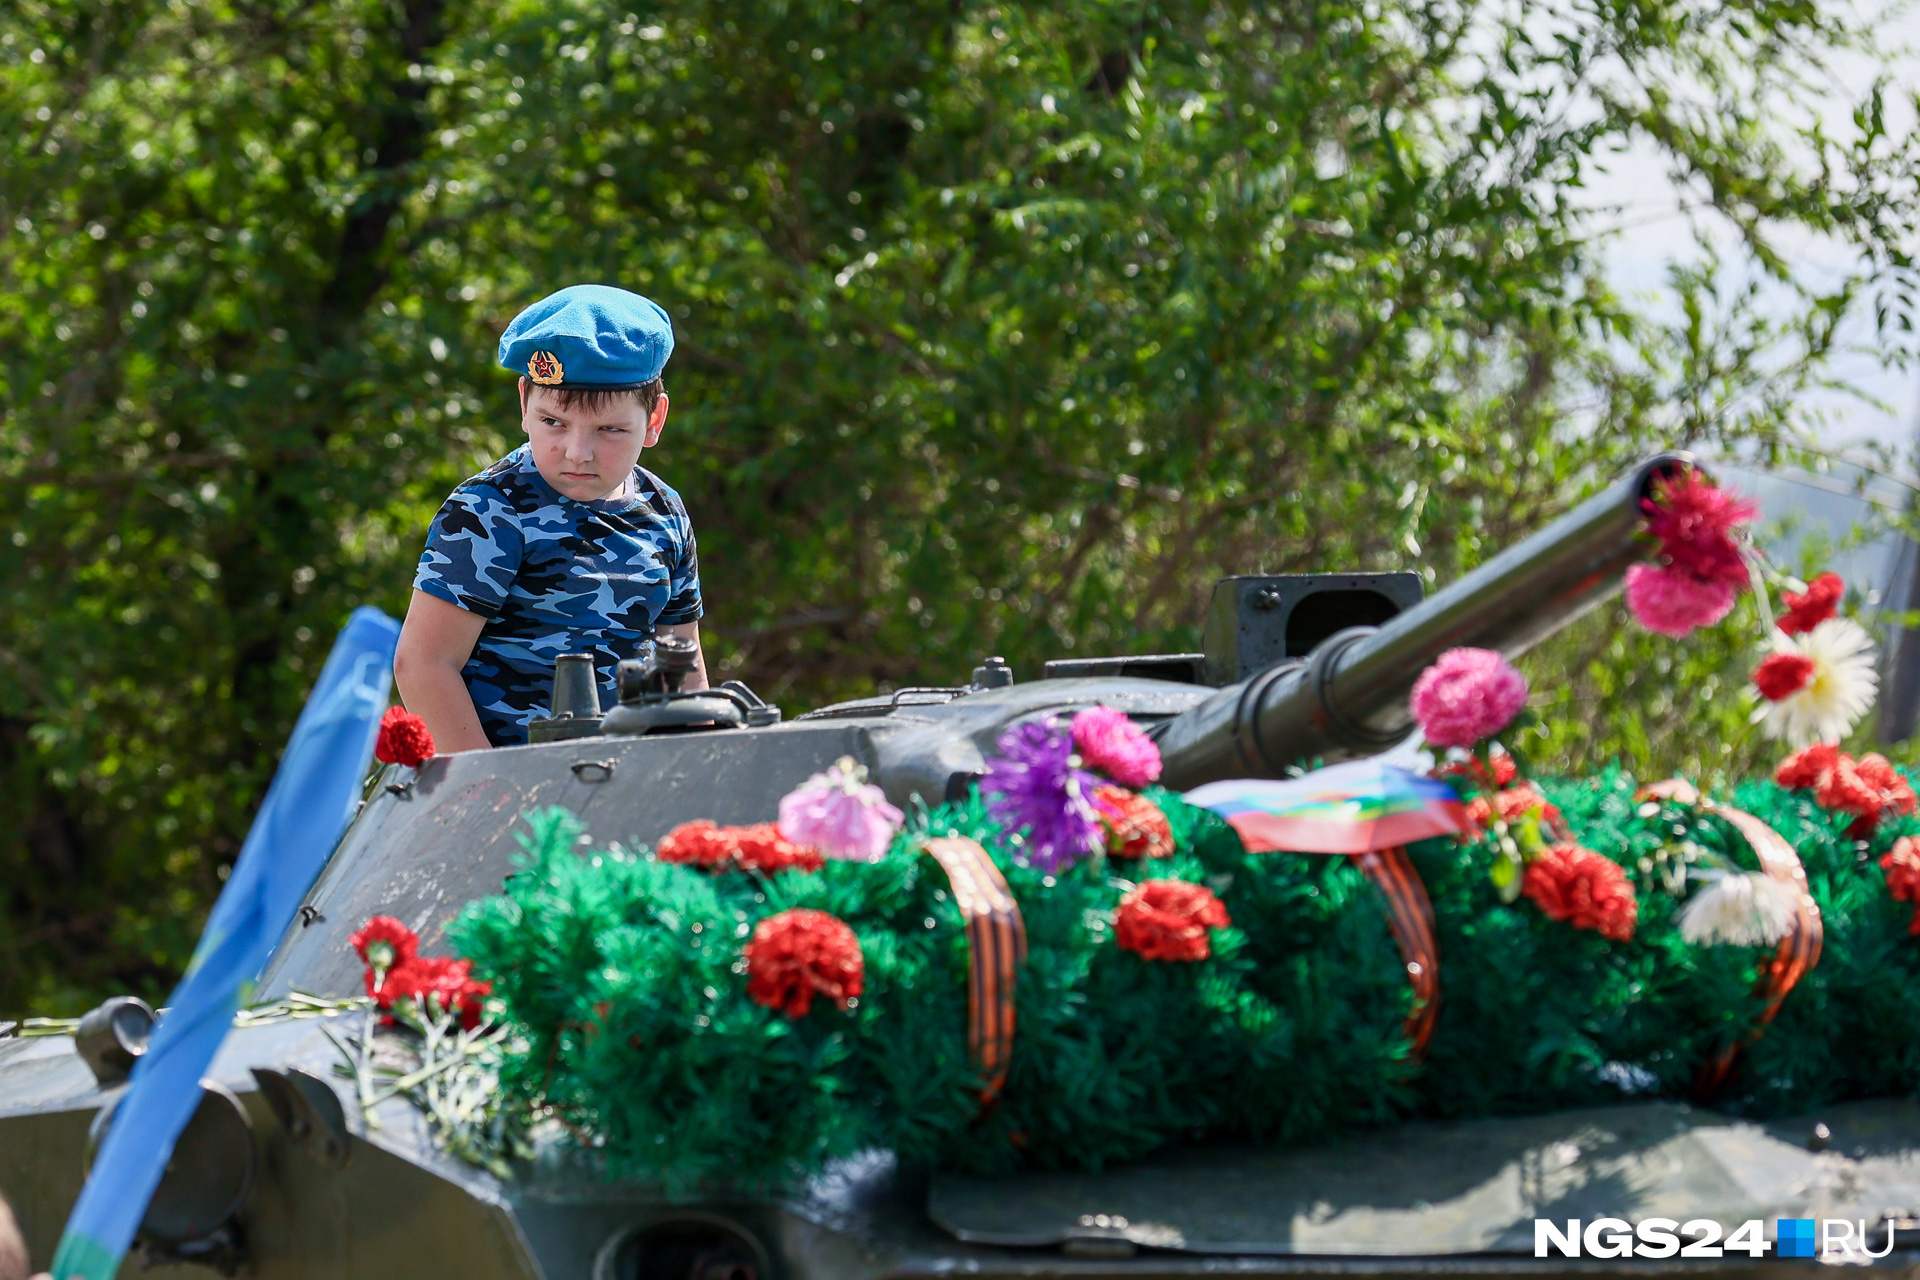 Сын десантника на боевой машине десанта, украшенной цветами в честь Дня ВДВ